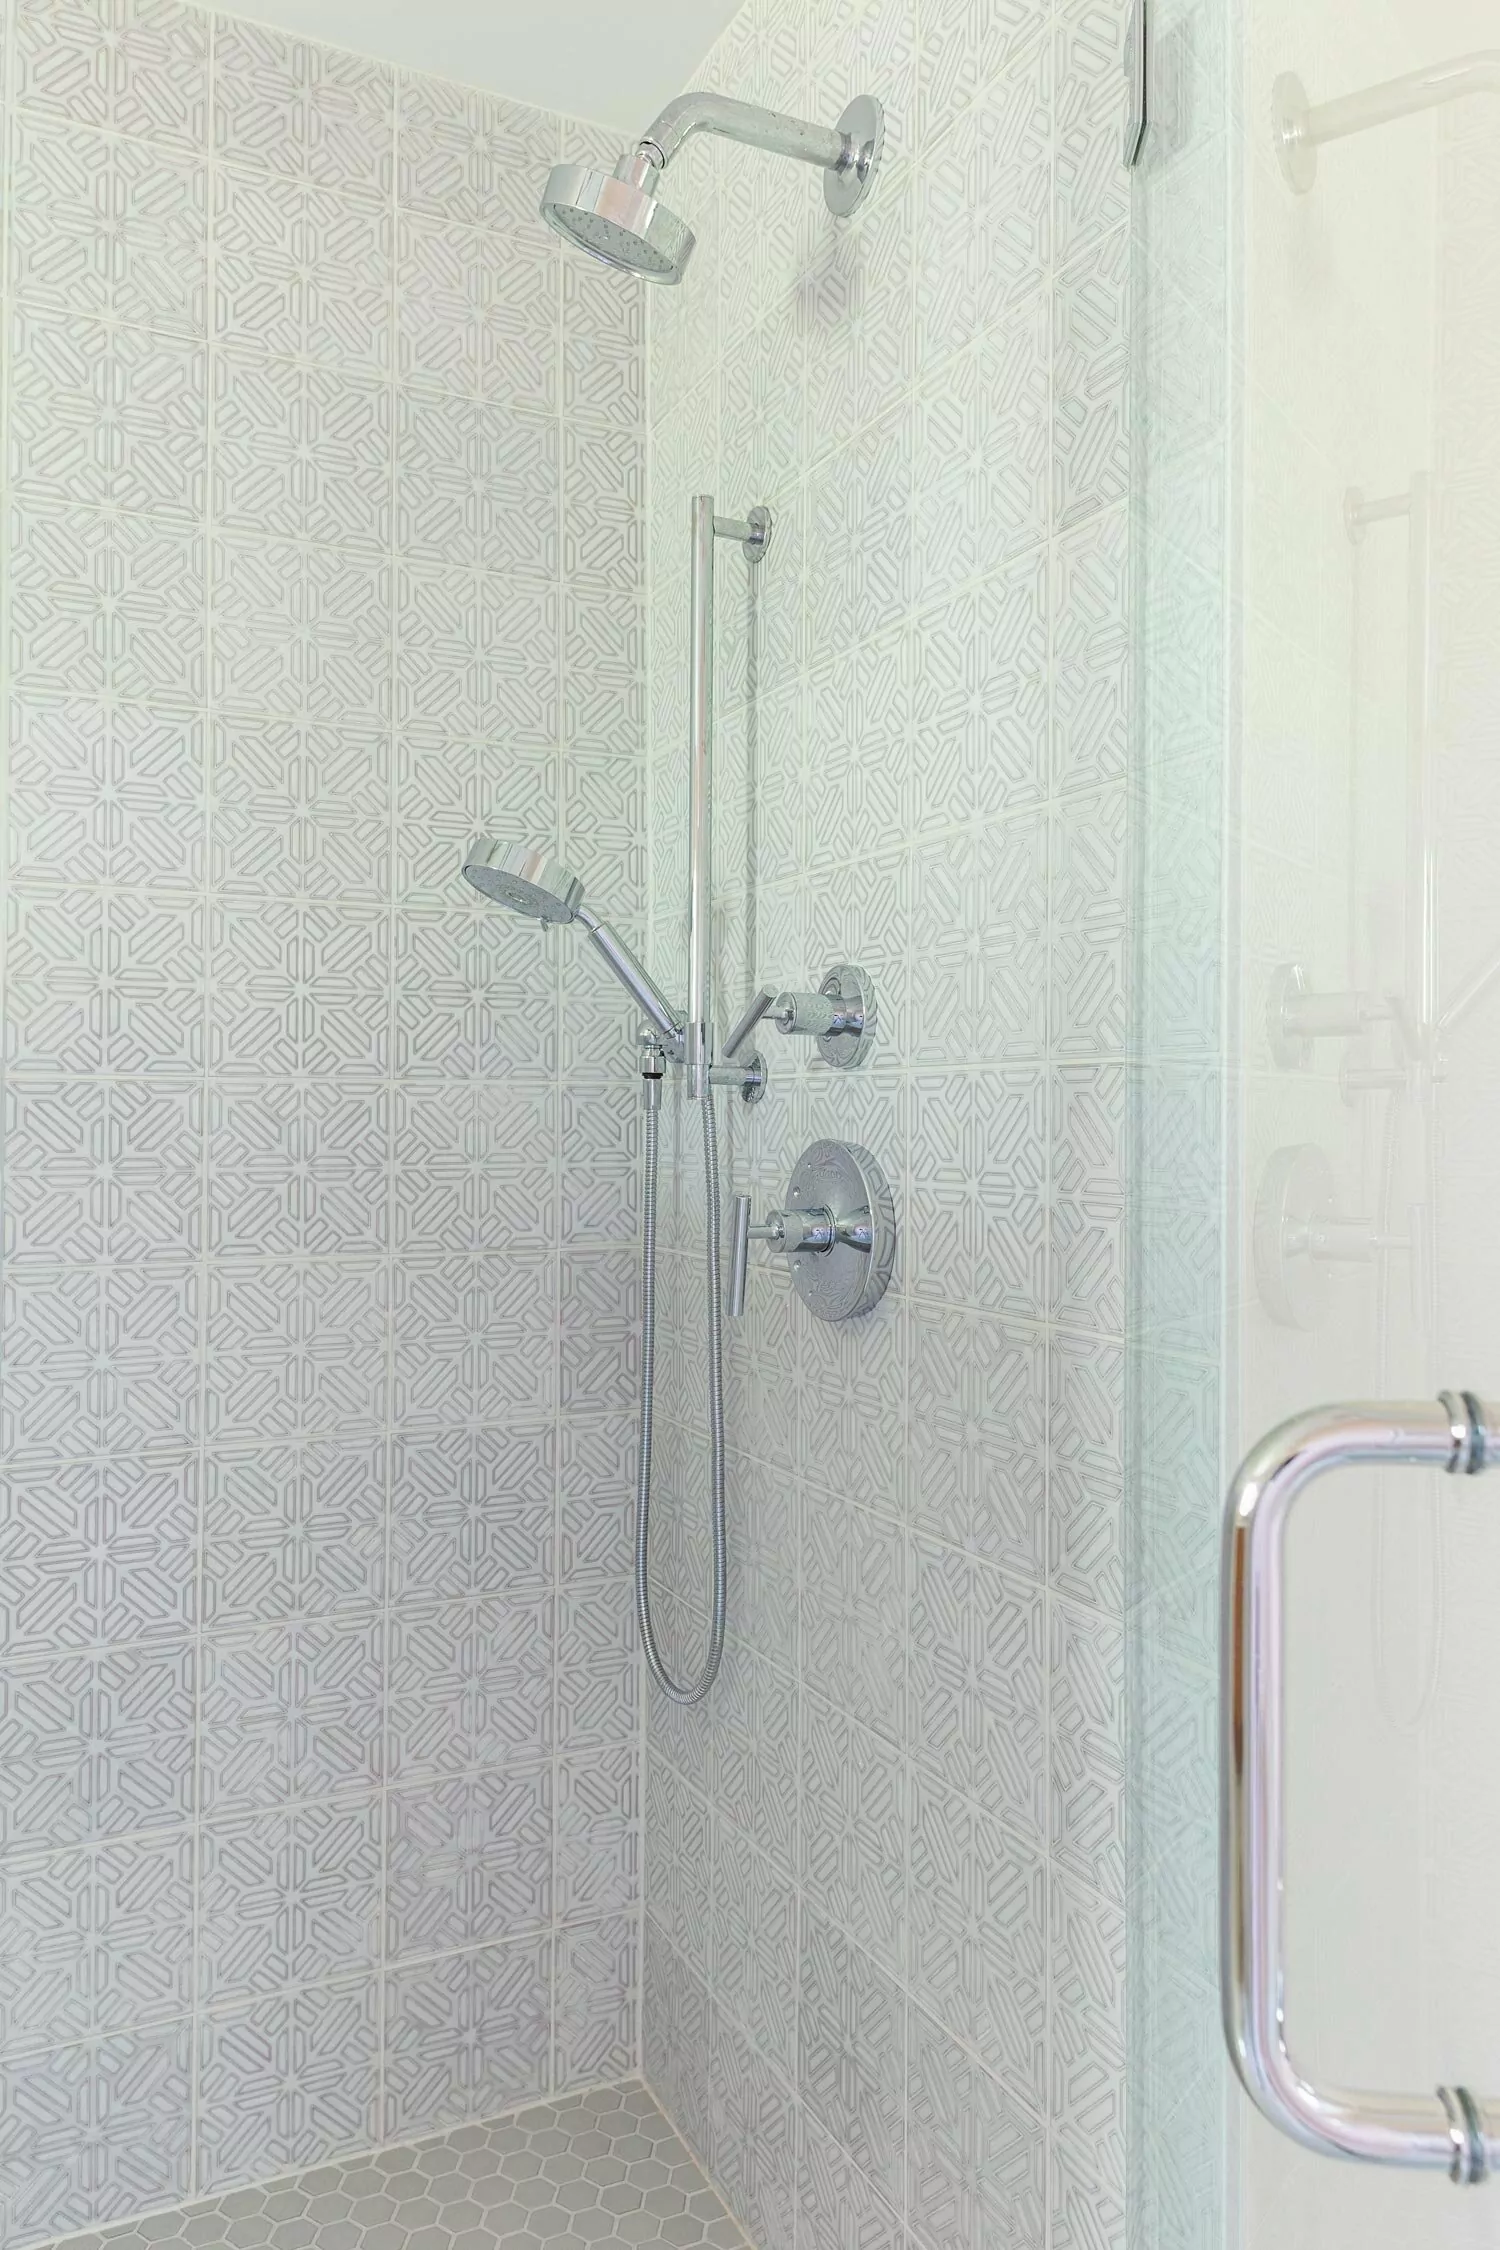 Kohler in walk-in shower.jpg